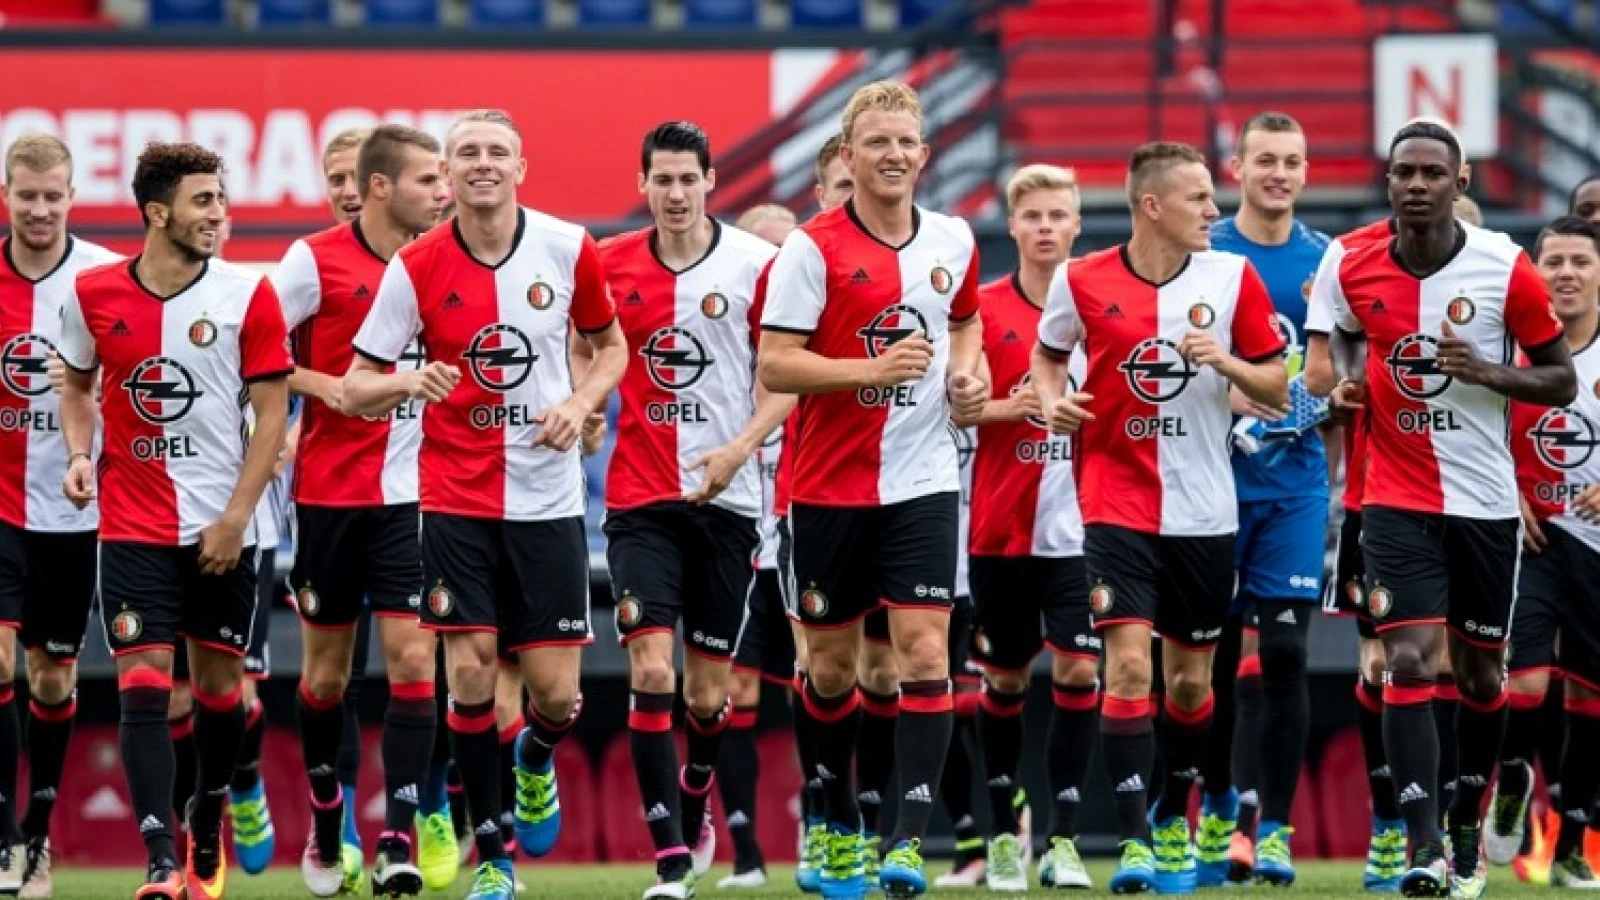 OPVALLEND | Feyenoord middenvelder op het  veld bij eerste training AZ